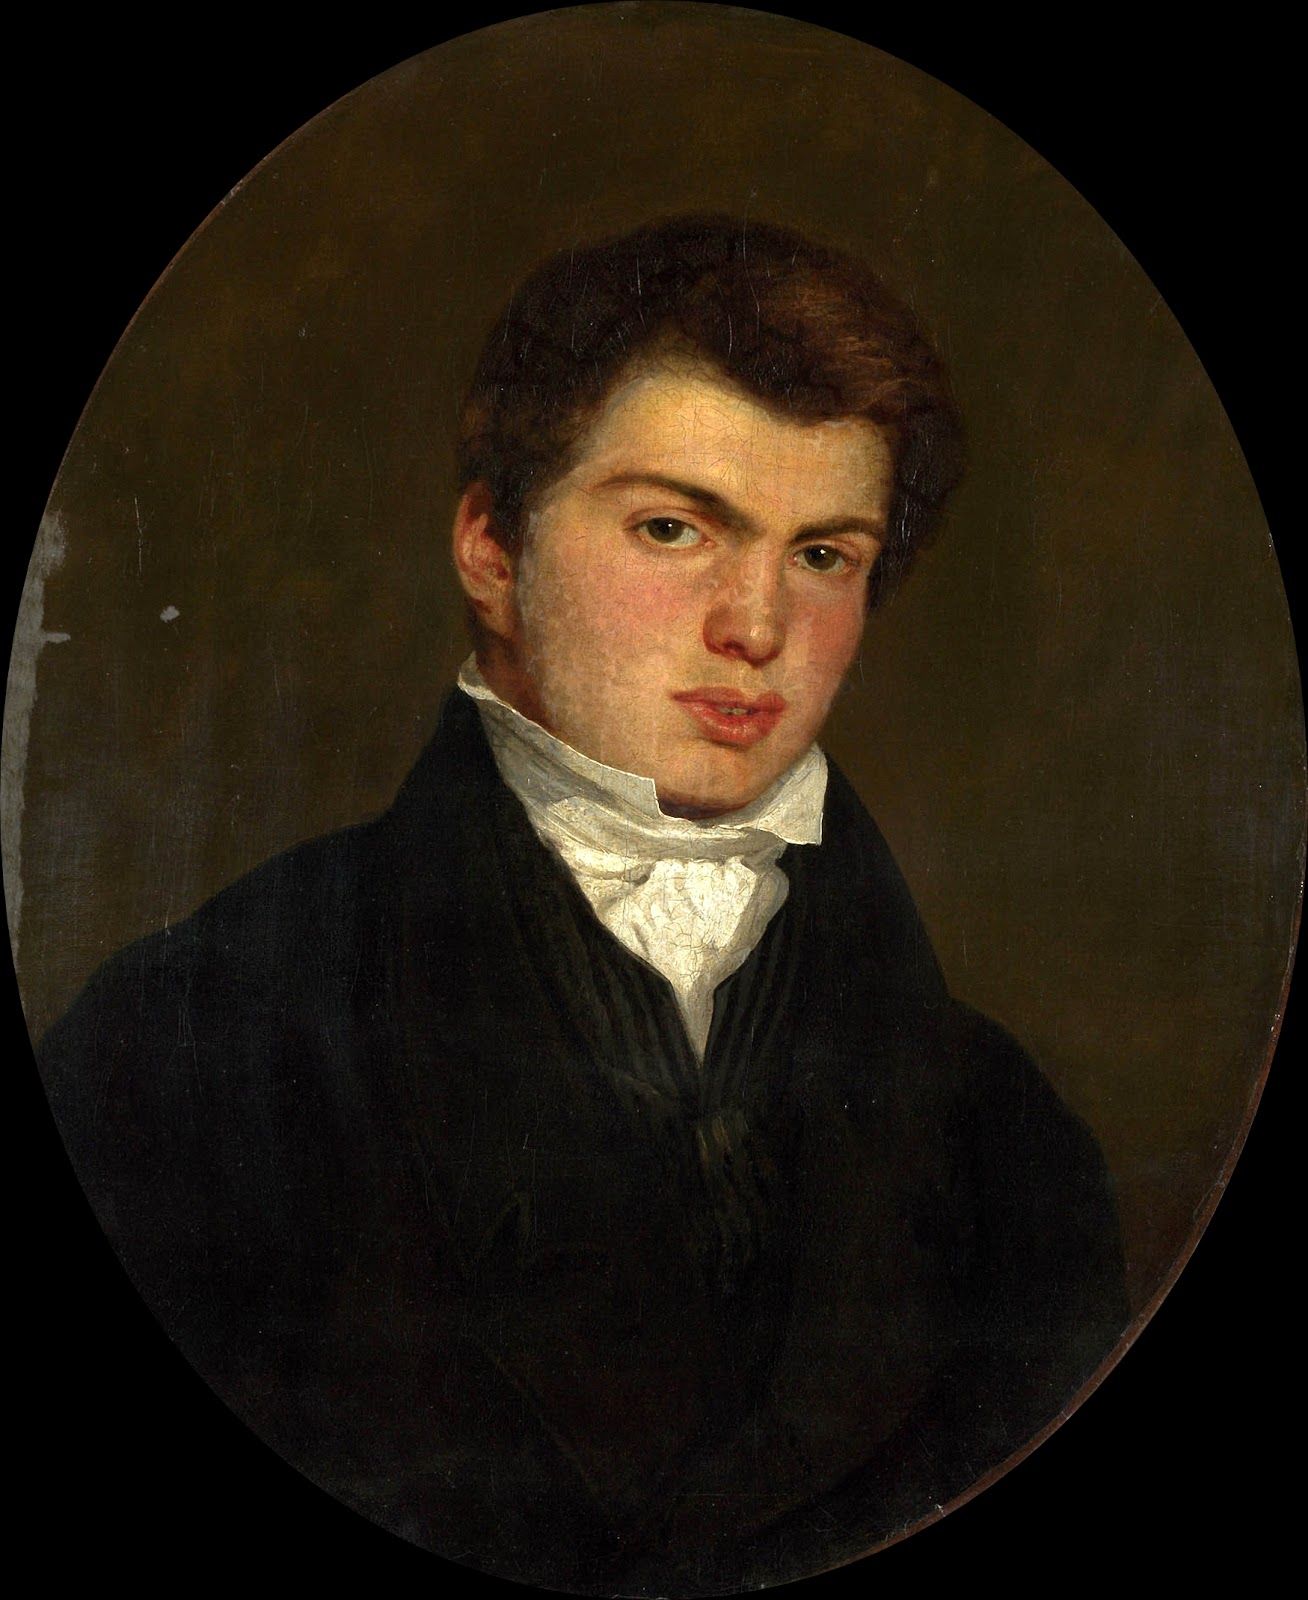 Eugene+Delacroix-1798-1863 (80).jpg